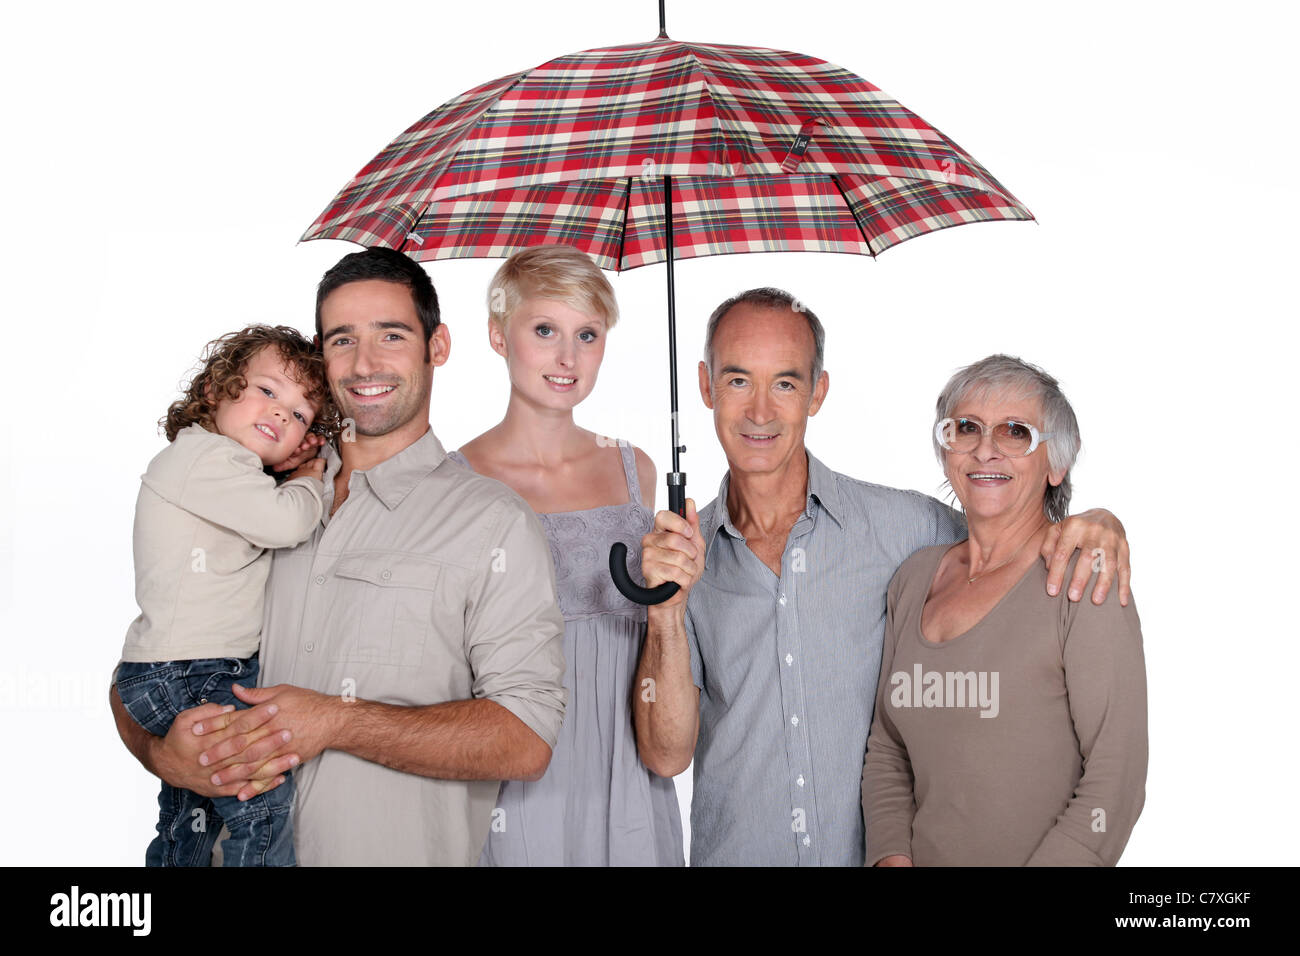 Зонтик семьи. Семья под зонтом. Семья под зонтом картинки. Семья с зонтиками. Зонтики в семейных отношениях.